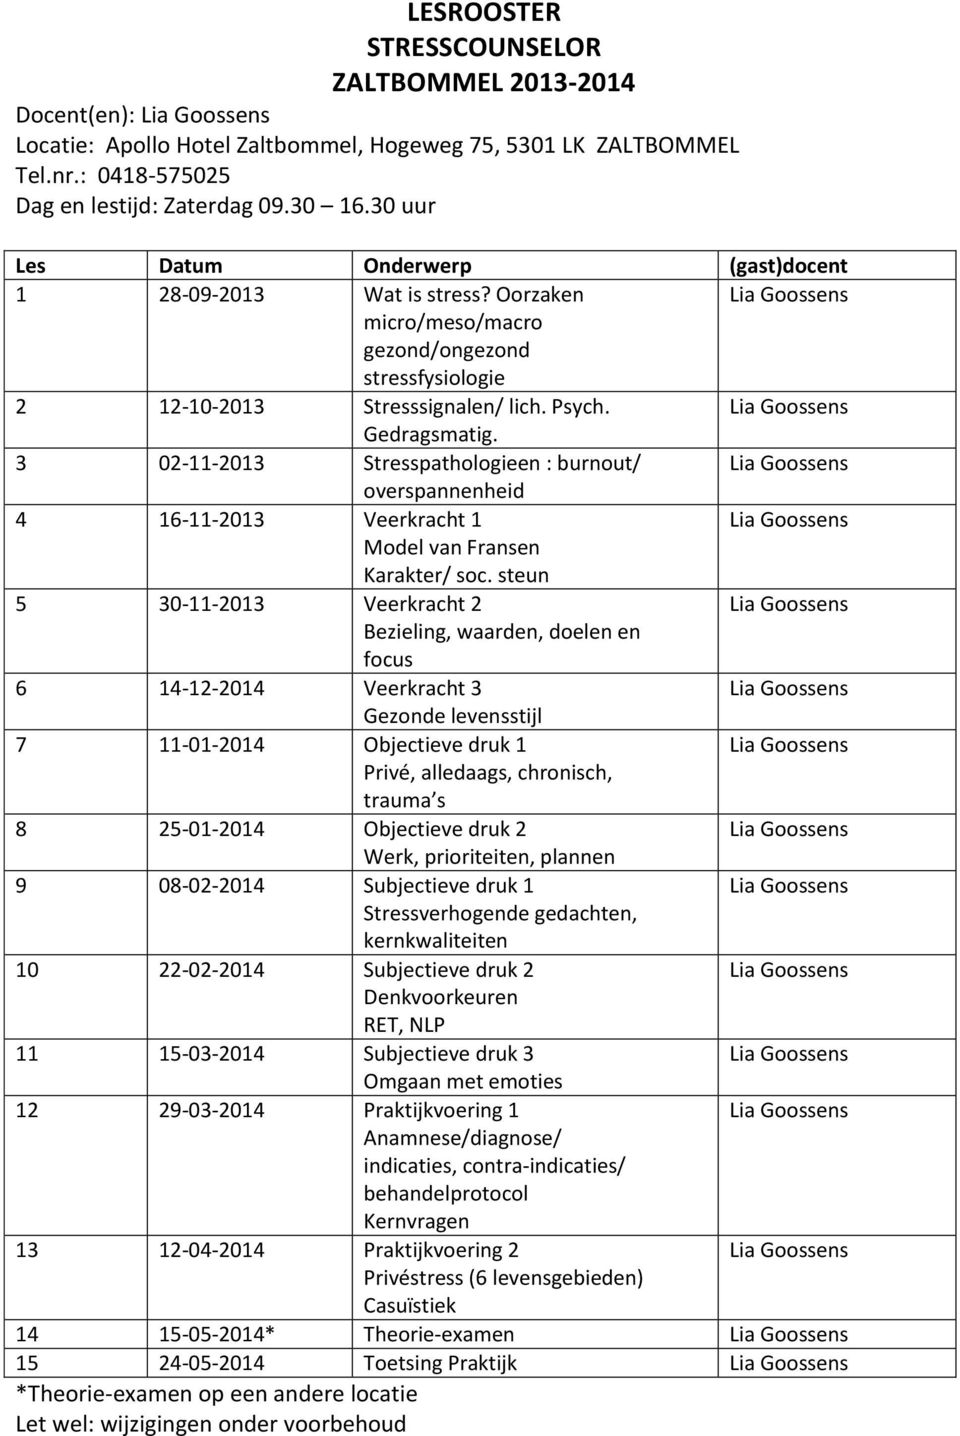 3 02-11-2013 Stresspathologieen : burnout/ 4 16-11-2013 Veerkracht 1 5 30-11-2013 Veerkracht 2 6 14-12-2014 Veerkracht 3 7 11-01-2014 Objectieve druk 1 8